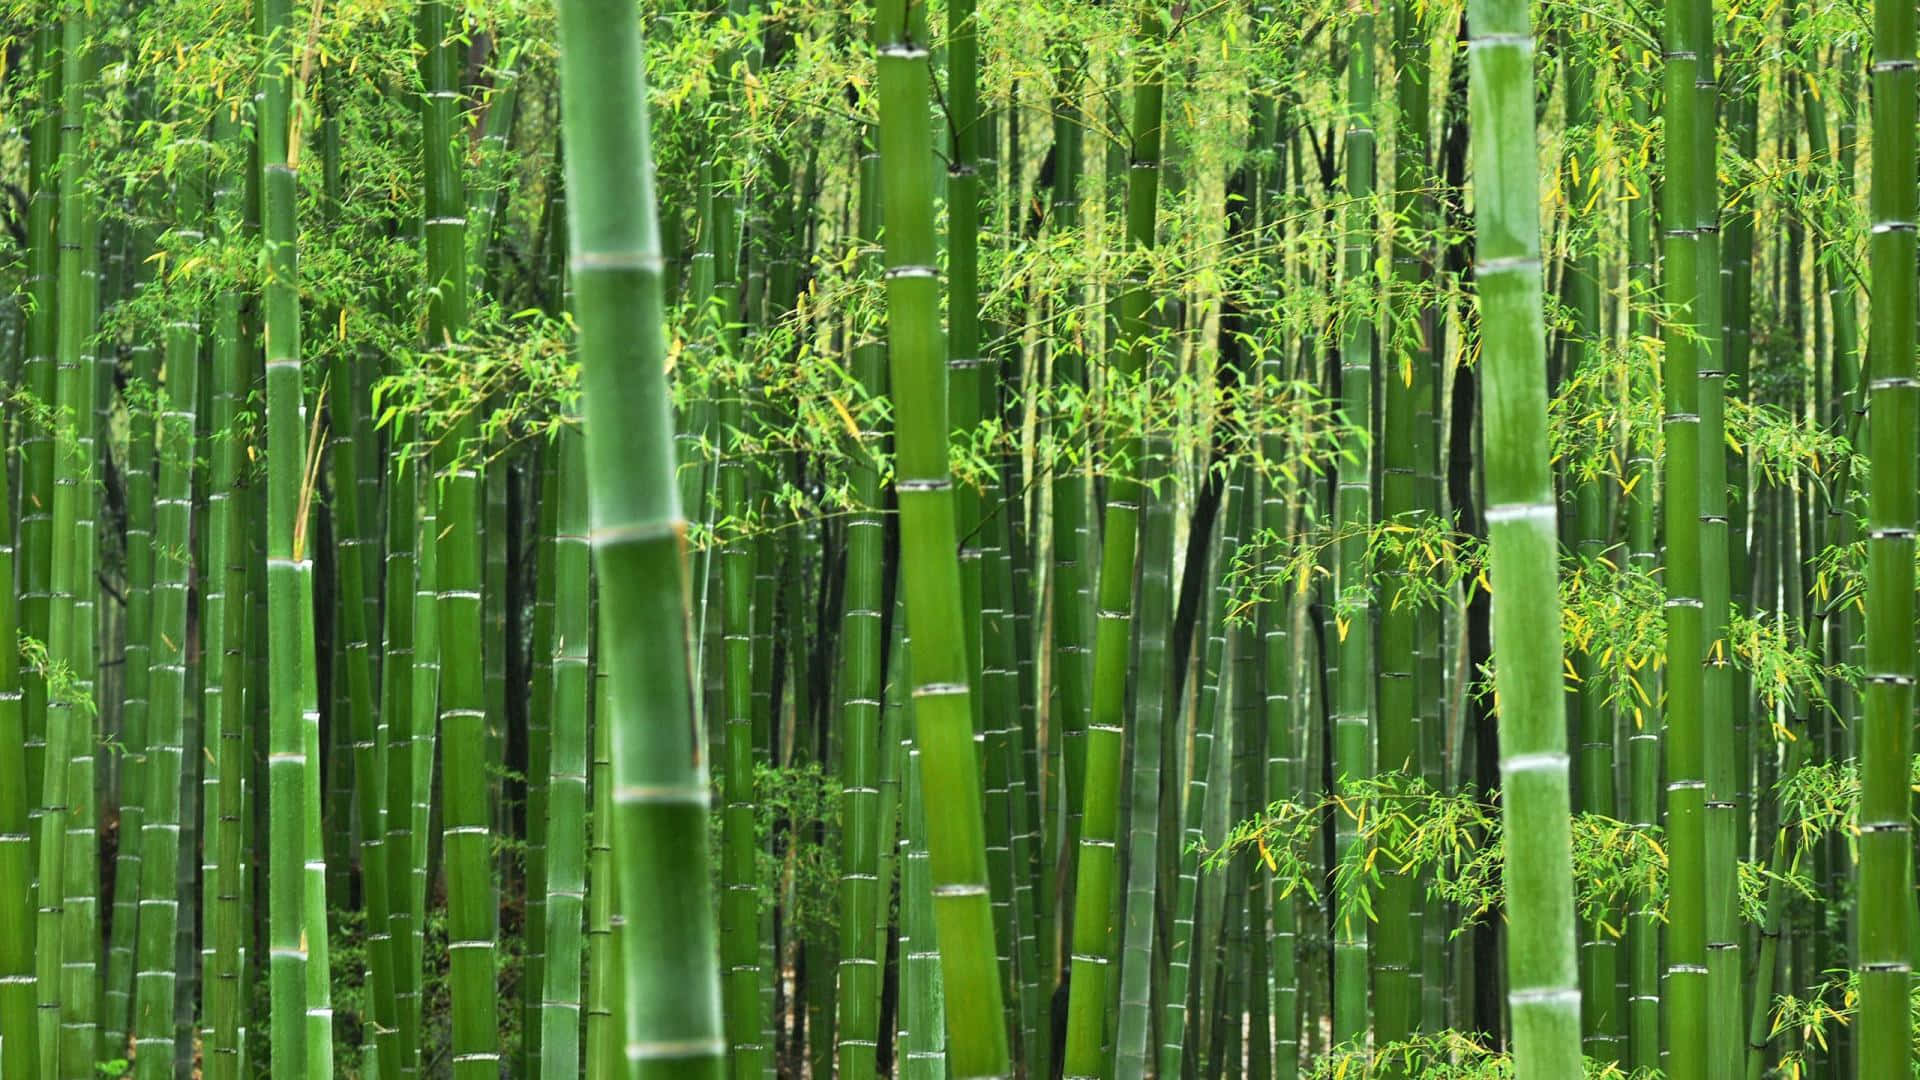 Unosfondo Artistico E Colorato Di Alte Canne Di Bambù.